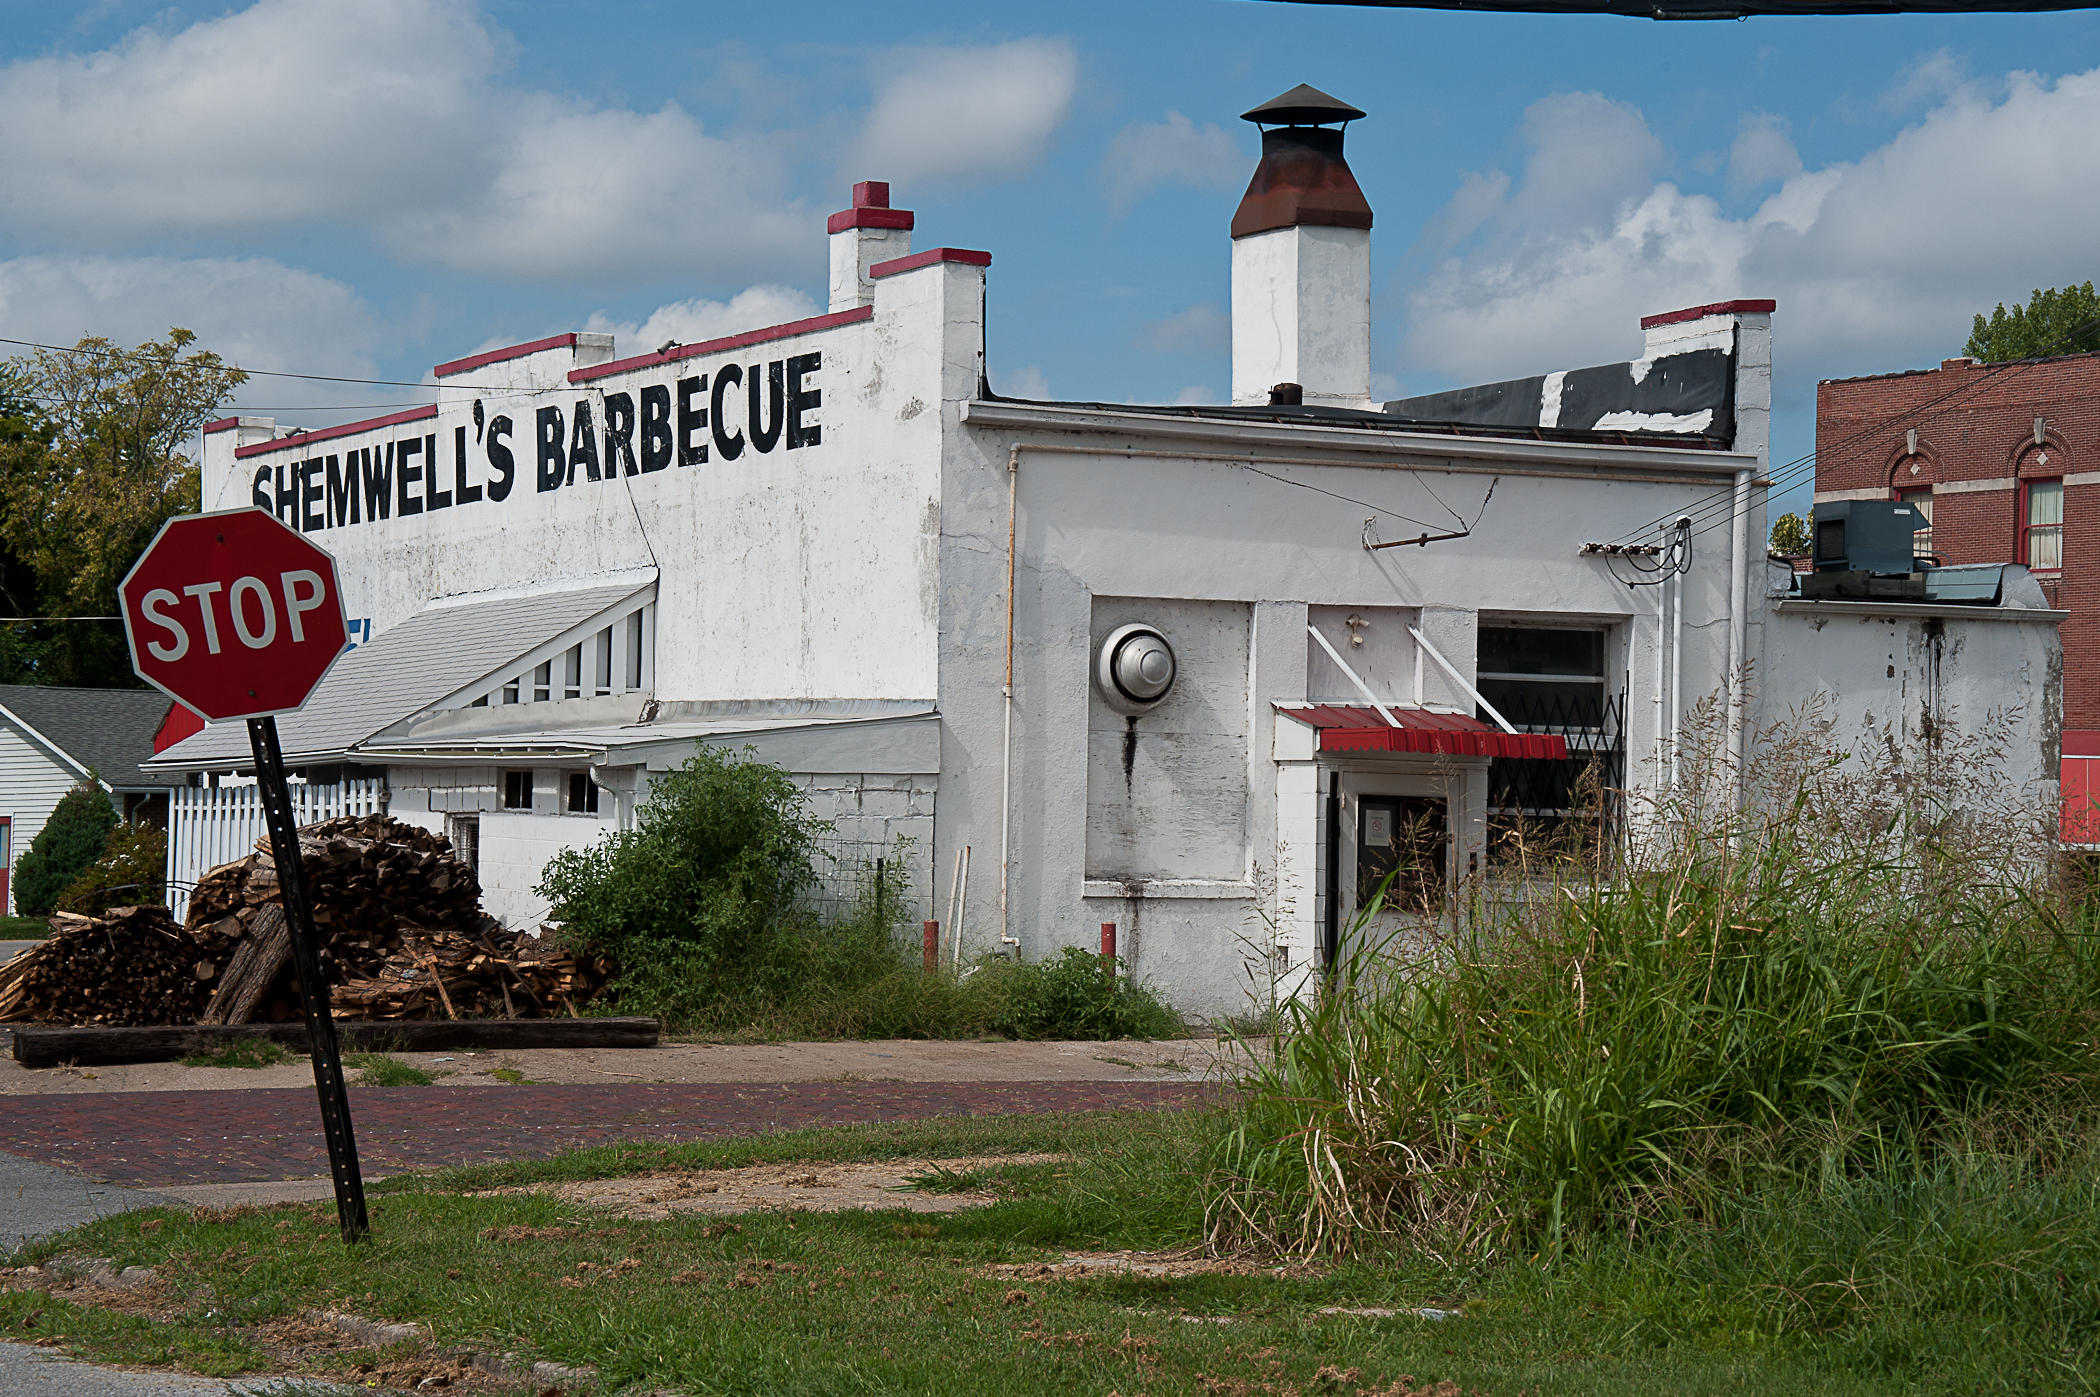 Shemwells Barbecue